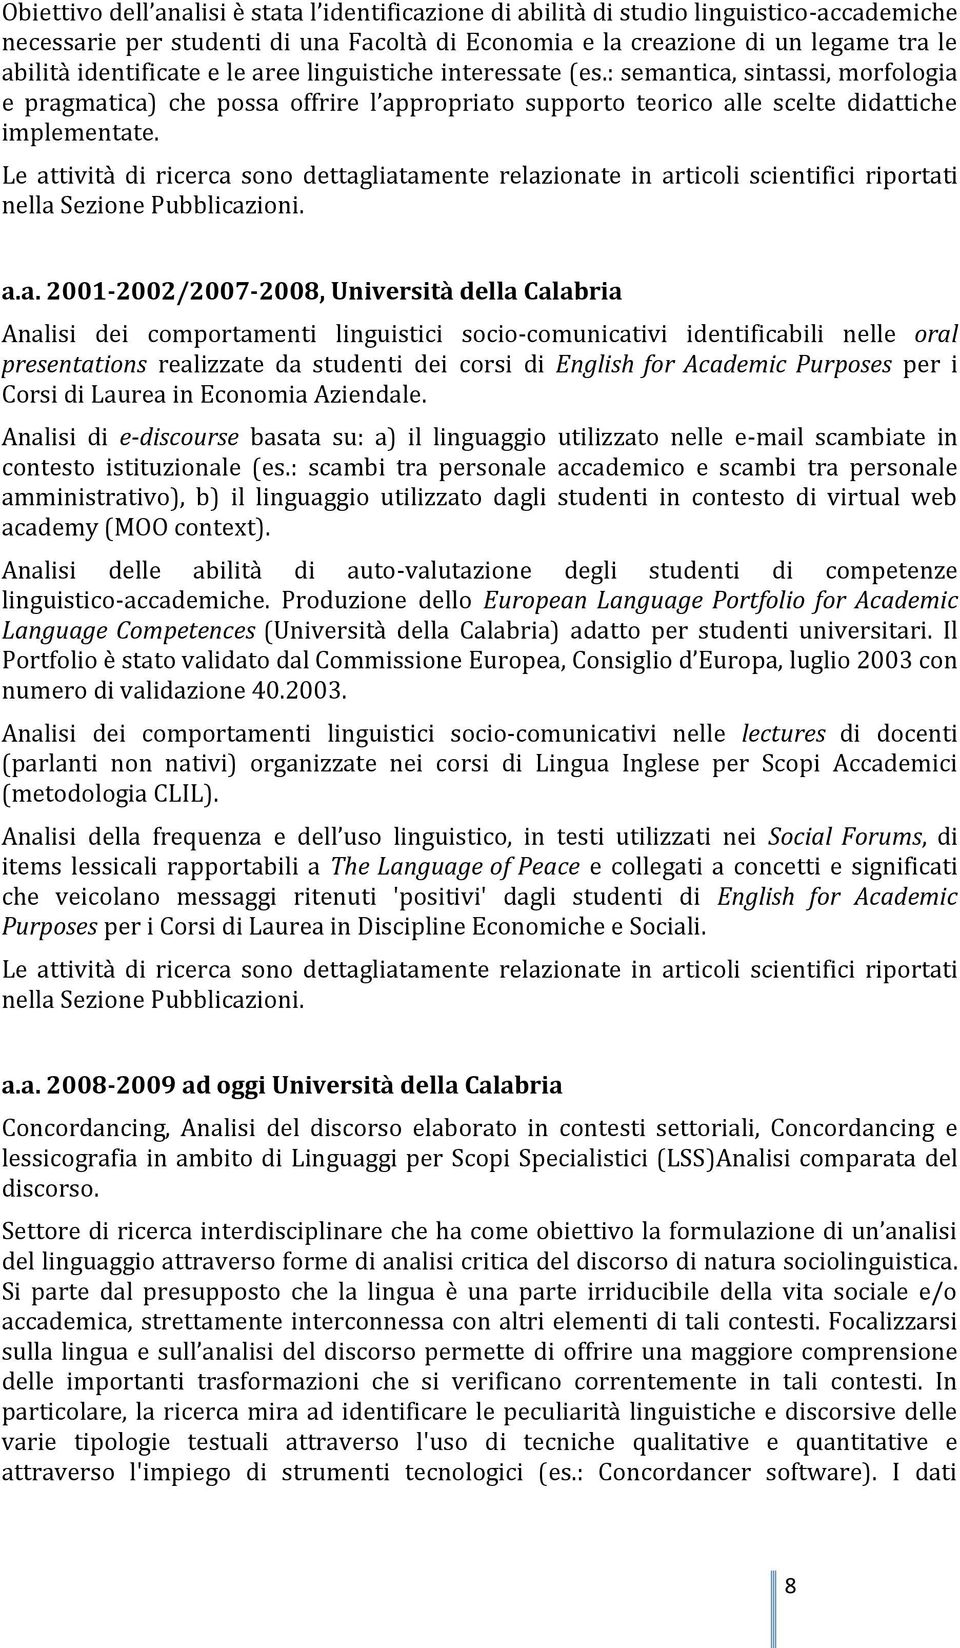 Le attività di ricerca sono dettagliatamente relazionate in articoli scientifici riportati nella Sezione Pubblicazioni. a.a. 2001-2002/2007-2008, Università della Calabria Analisi dei comportamenti